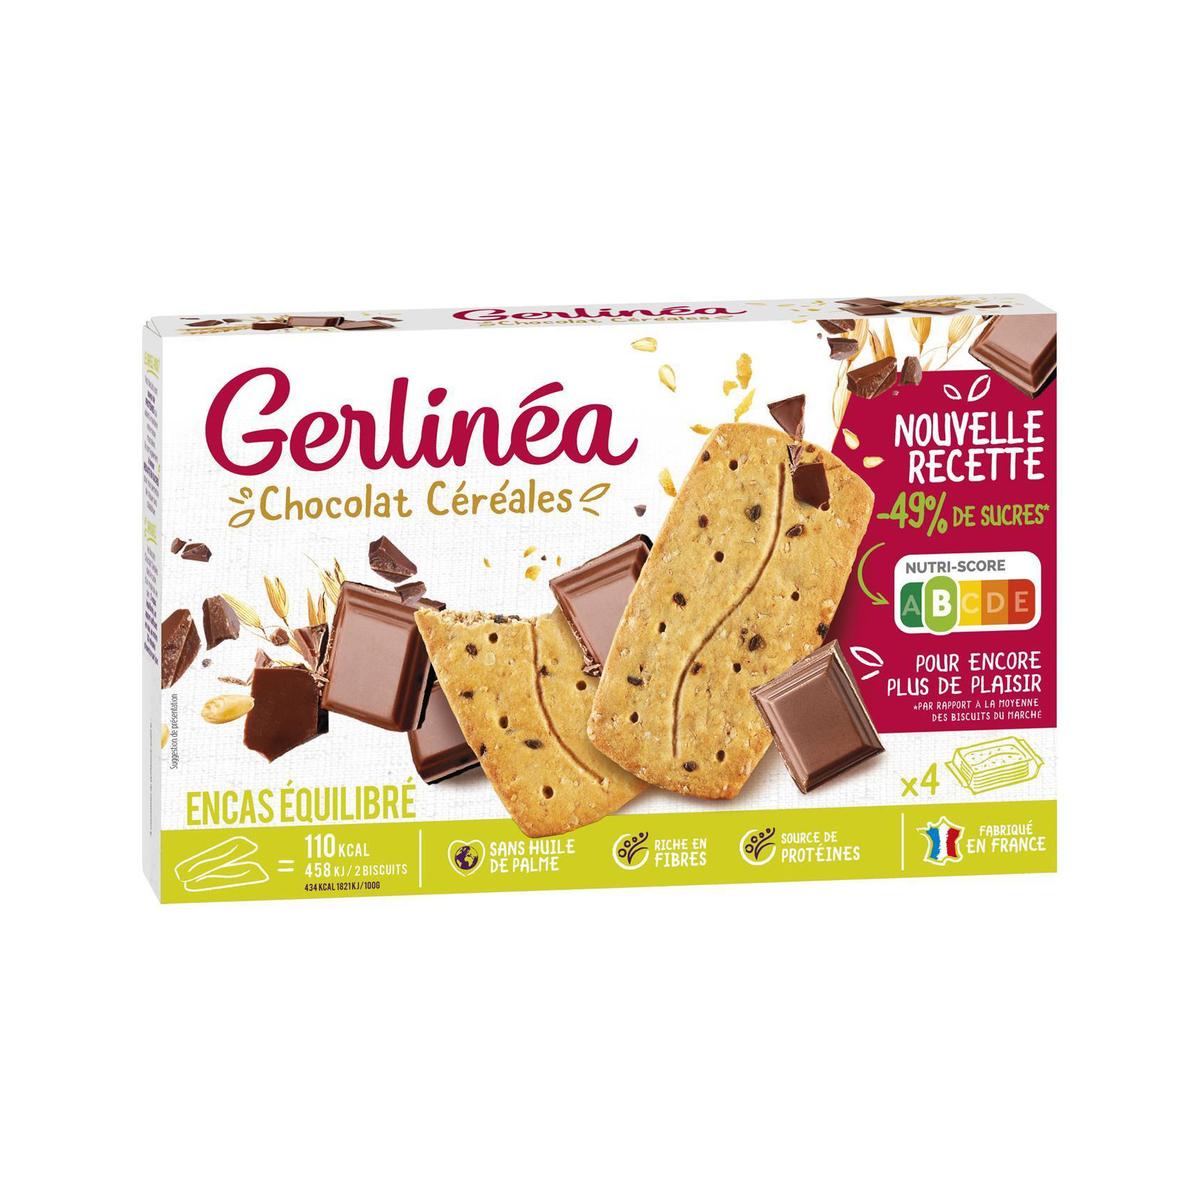 Acheter Gerlinéa 4 Biscuits chocolat céréales -49% de sucres en moins